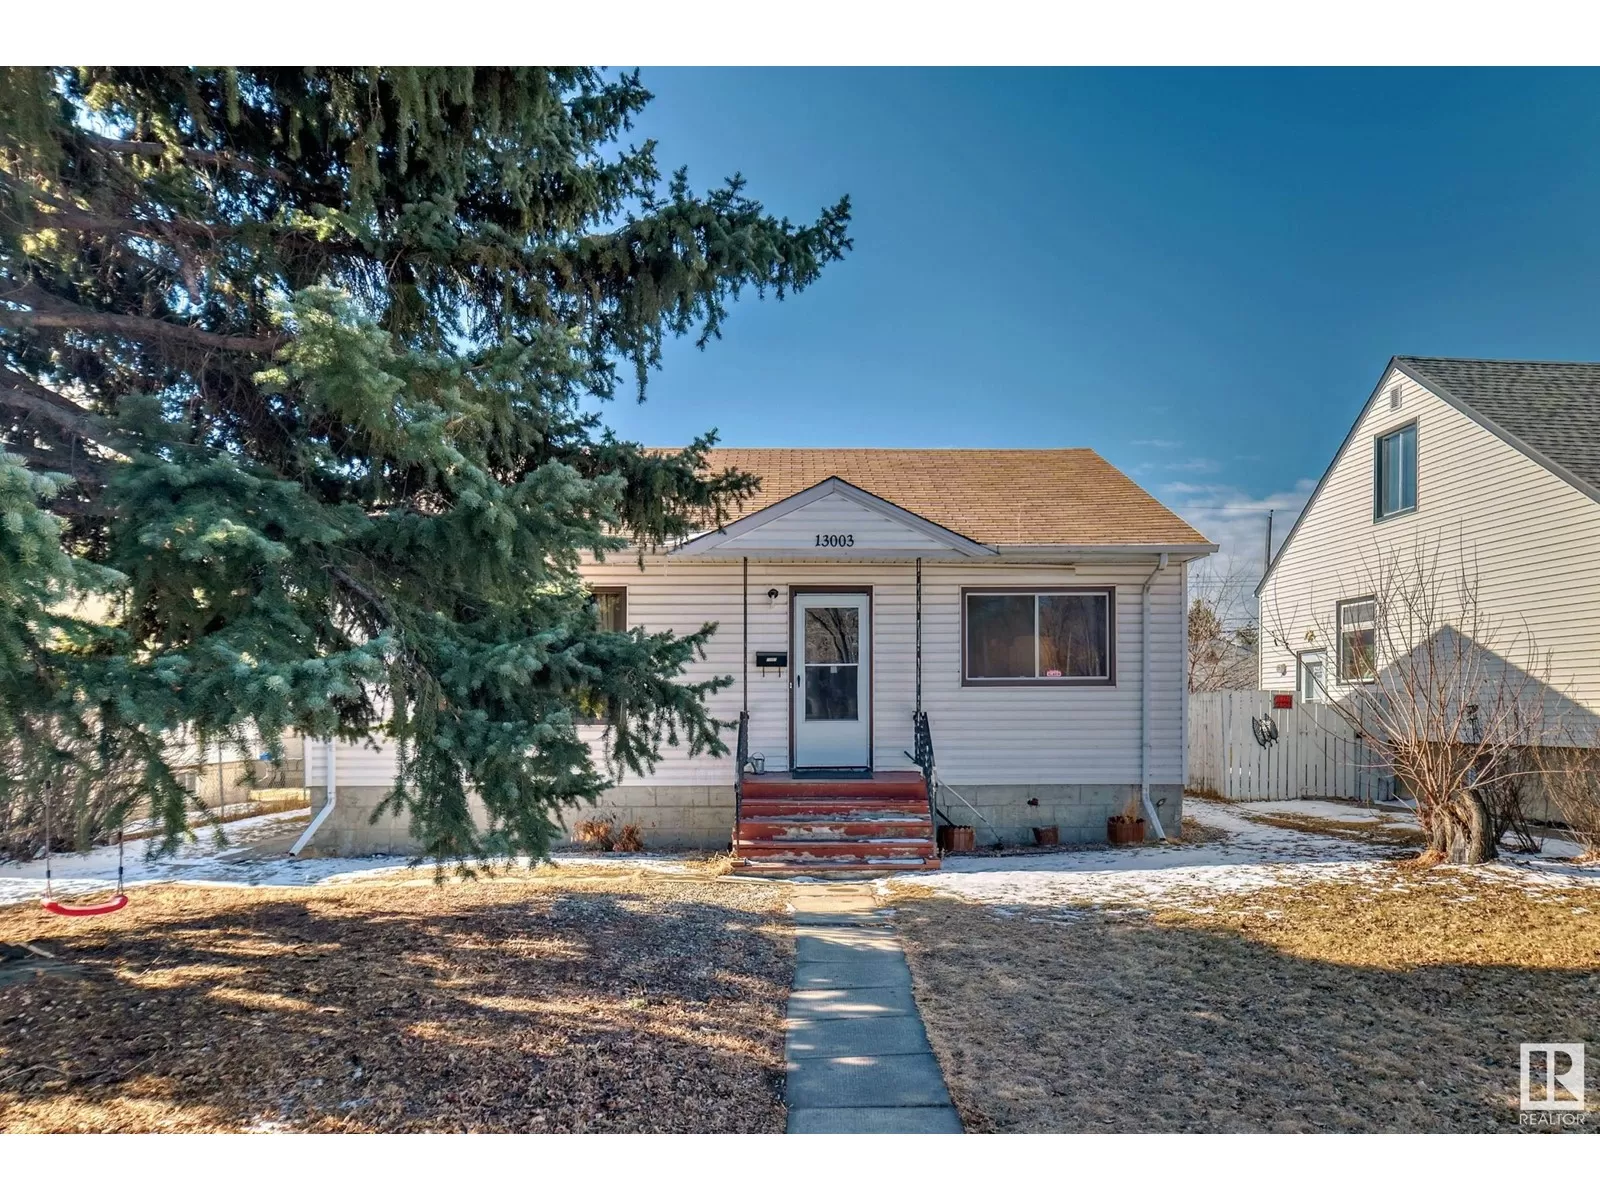 House for rent: 13003 Sherbrooke Av Nw, Edmonton, Alberta T5L 4E6